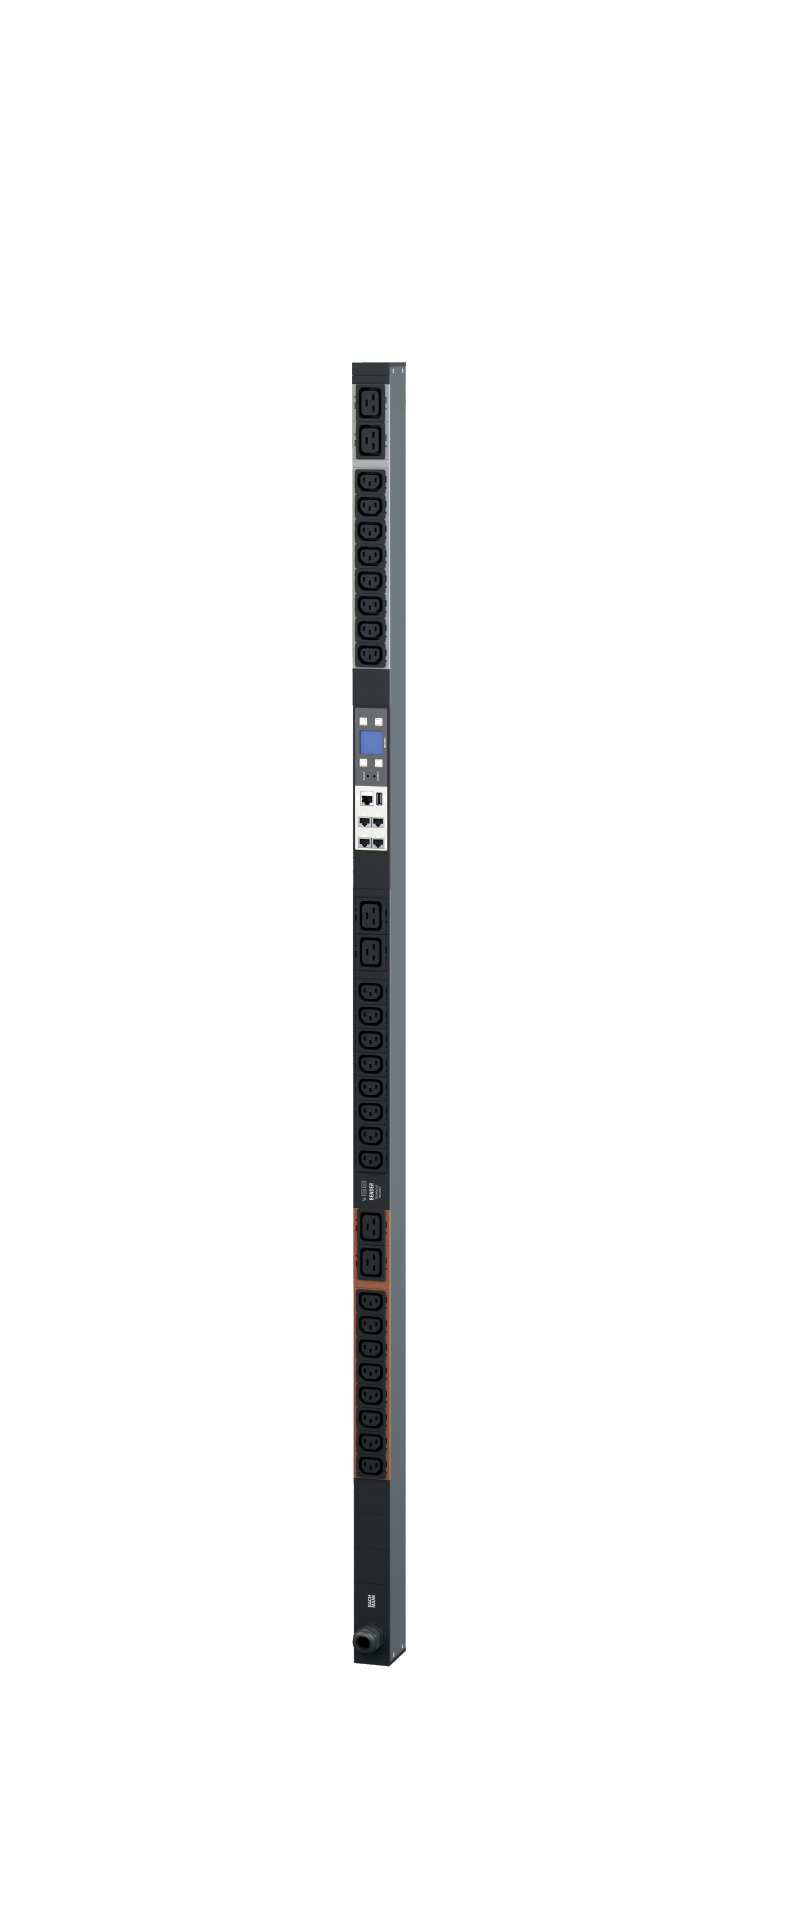 PDU Vertikal BN3000 Monitored 18 x C13 + 3 x C19 + 1 x RCM, 16 A